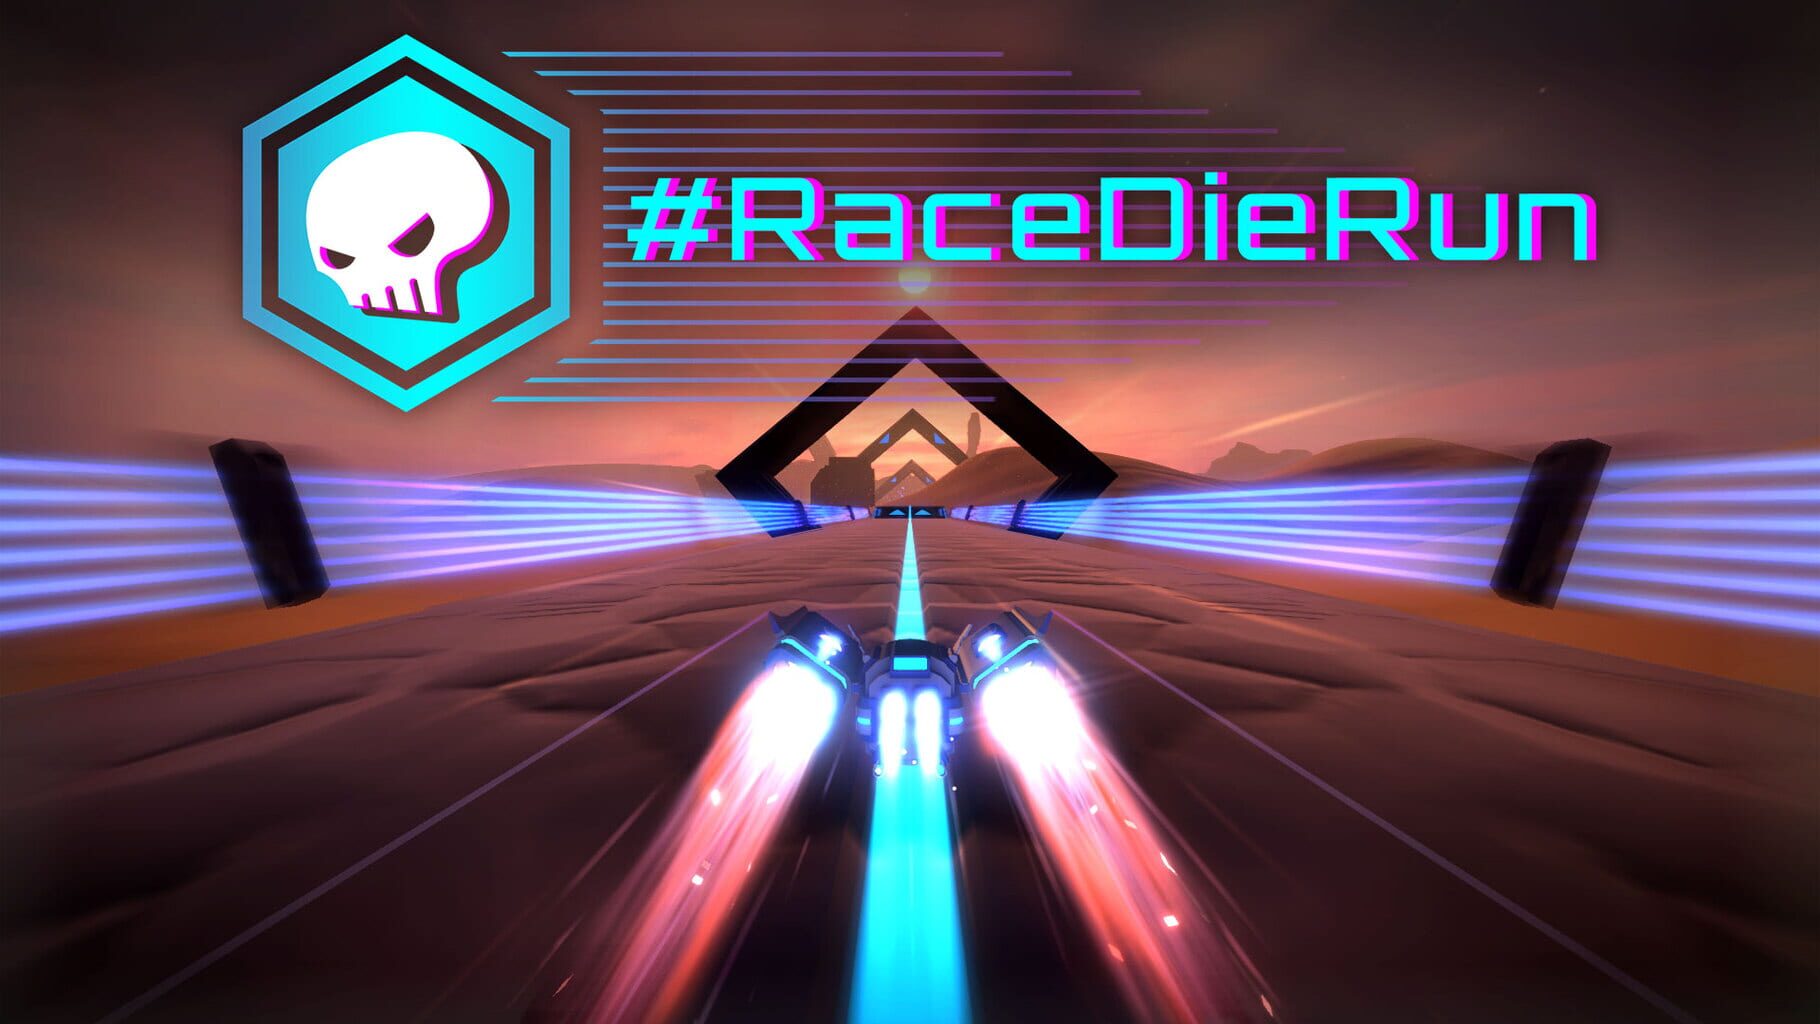 #RaceDieRun artwork